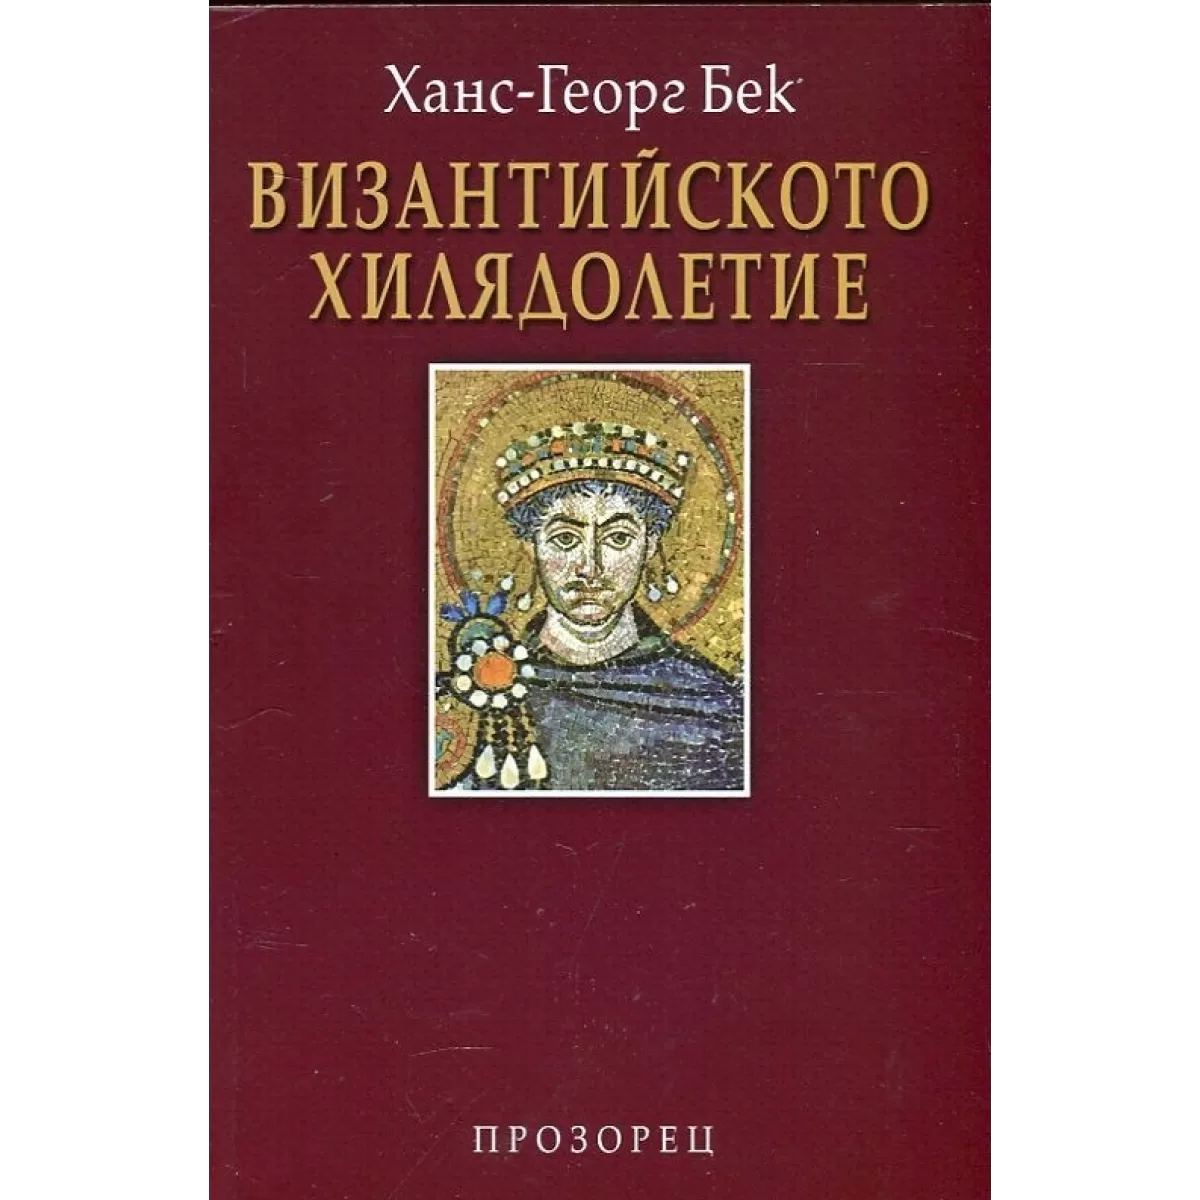 Византийското хилядолетие – твърда корица